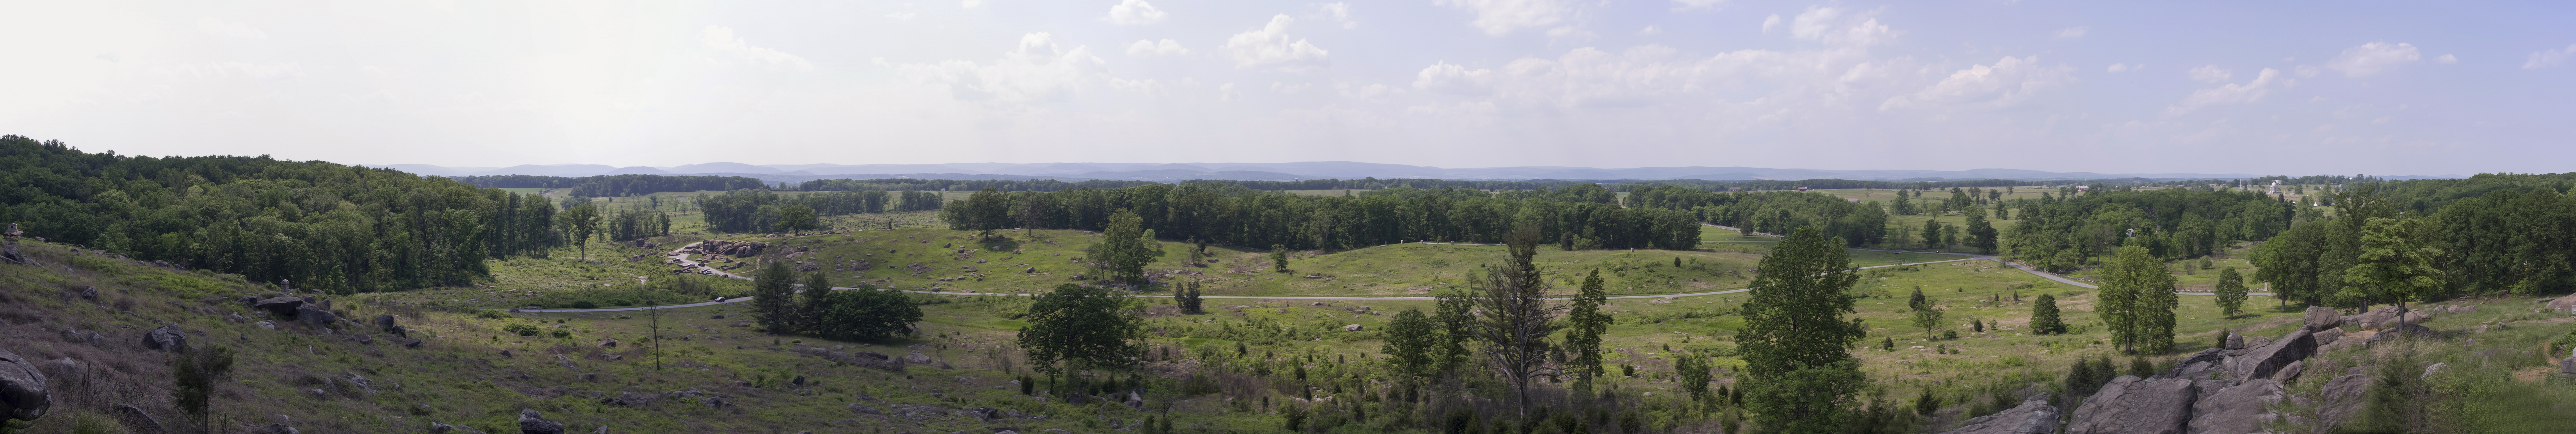 Gettysburg Little Round Top 